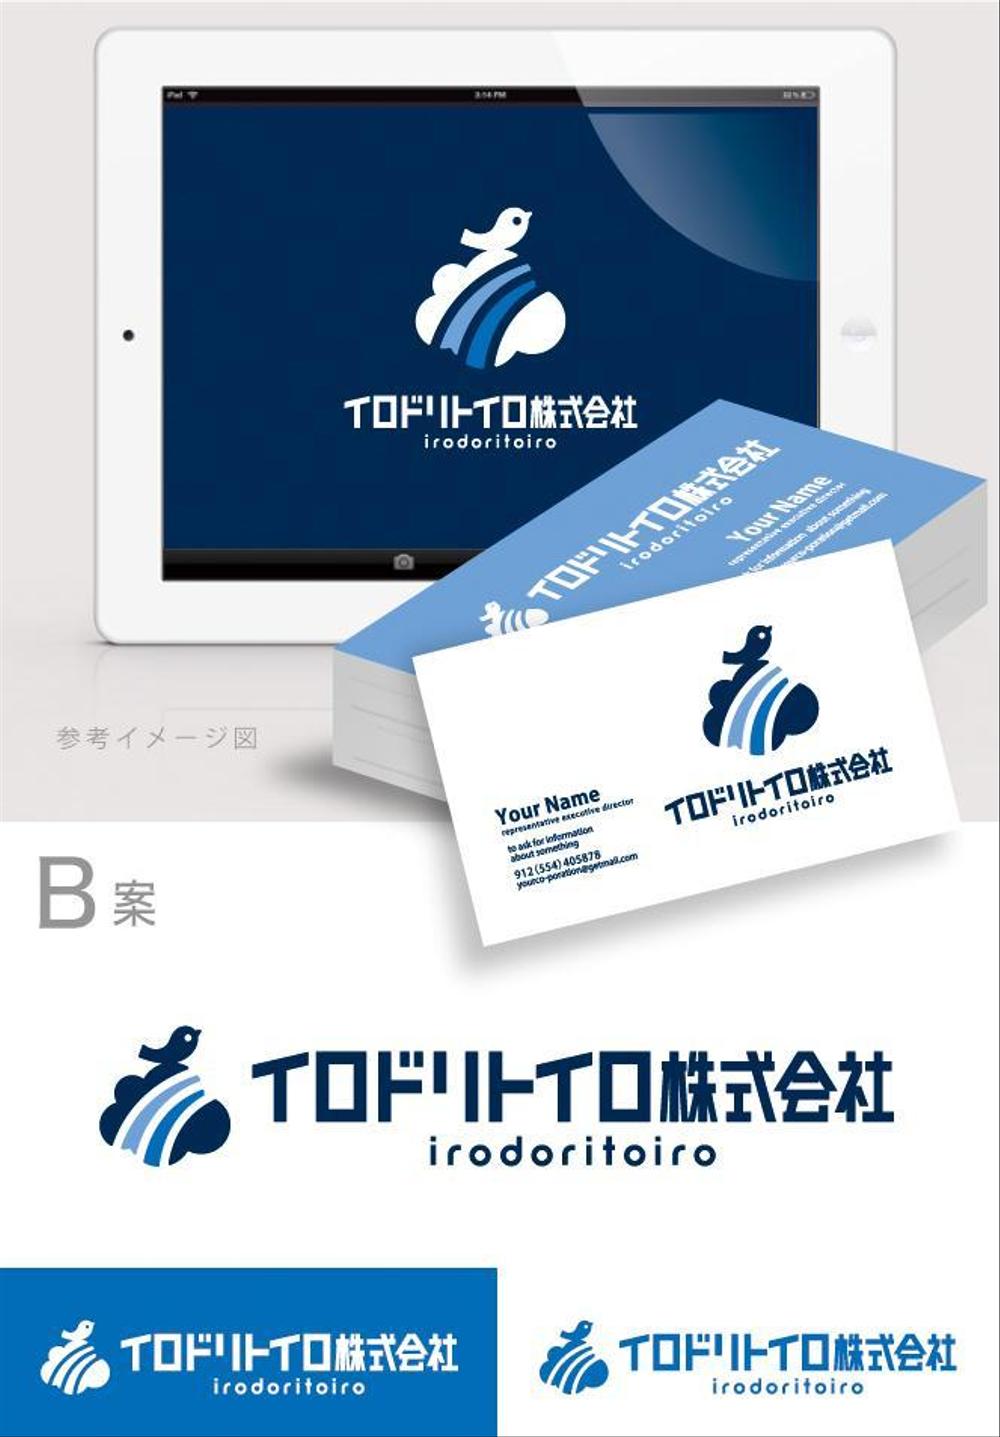 新しい働き方を時代に創出する企業「イロドリトイロ株式会社」のロゴ